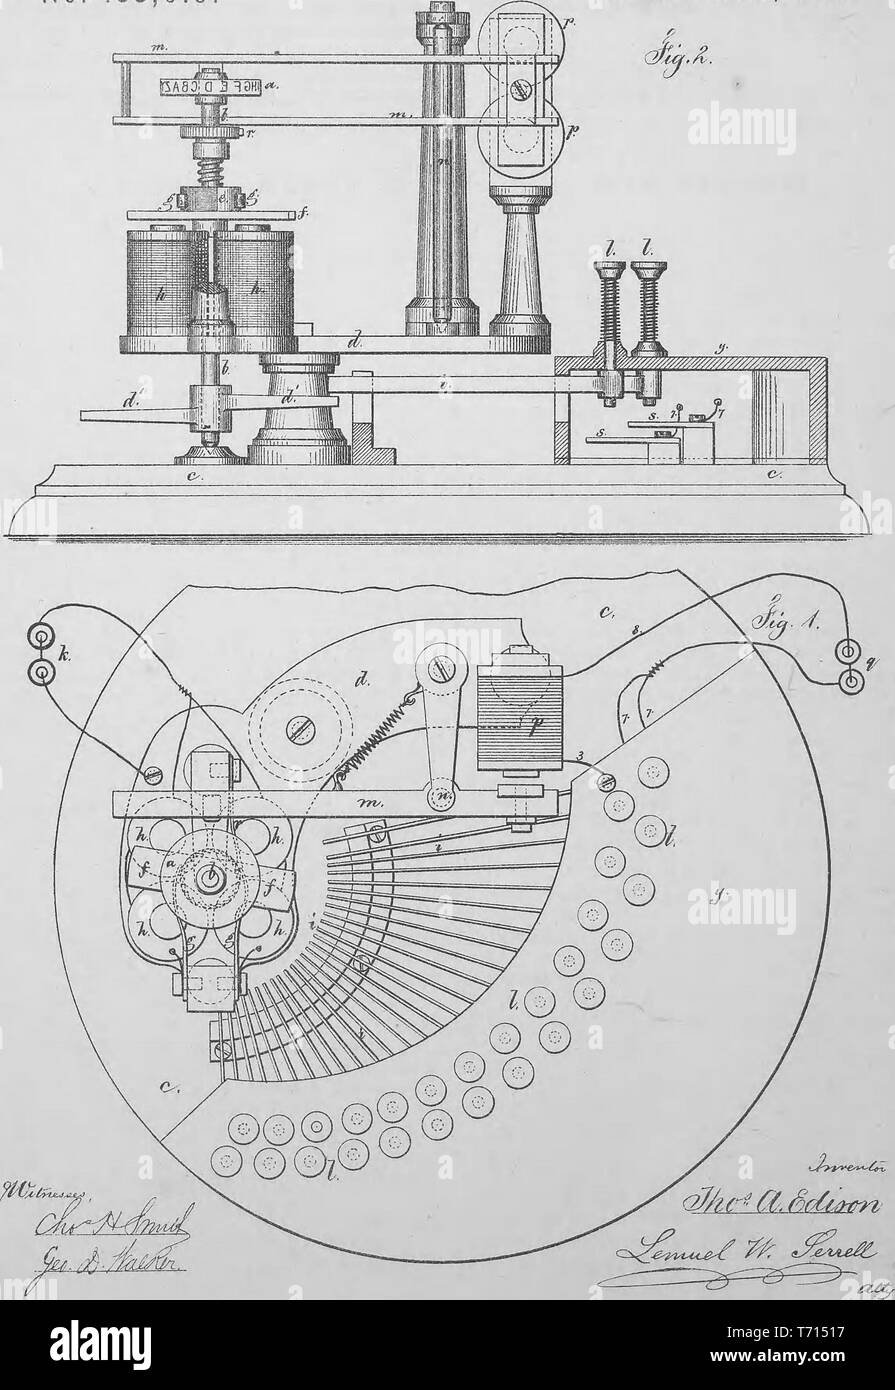 " Mejora de la patente grabado Printing-Machines eléctrico' de Thomas a Edison, del libro "Colección de patentes de los Estados Unidos concedió a Thomas A. Edison', 1869. Cortesía de Internet Archive. () Foto de stock